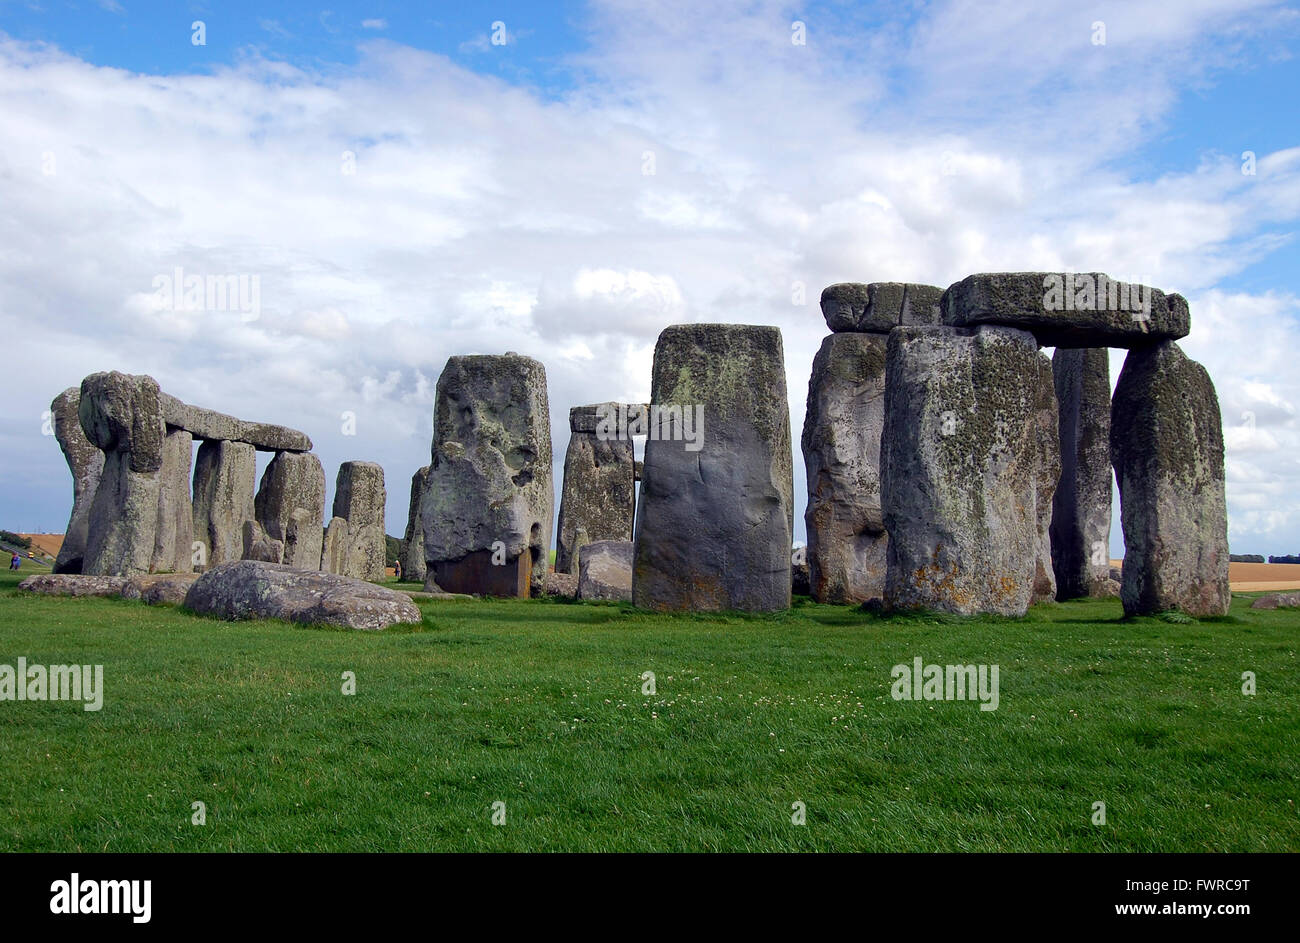 Le cercle de pierre à Stonehenge, a l'air magnifique, sous un ciel bleu avec des nuages blancs moelleux, England, UK Banque D'Images